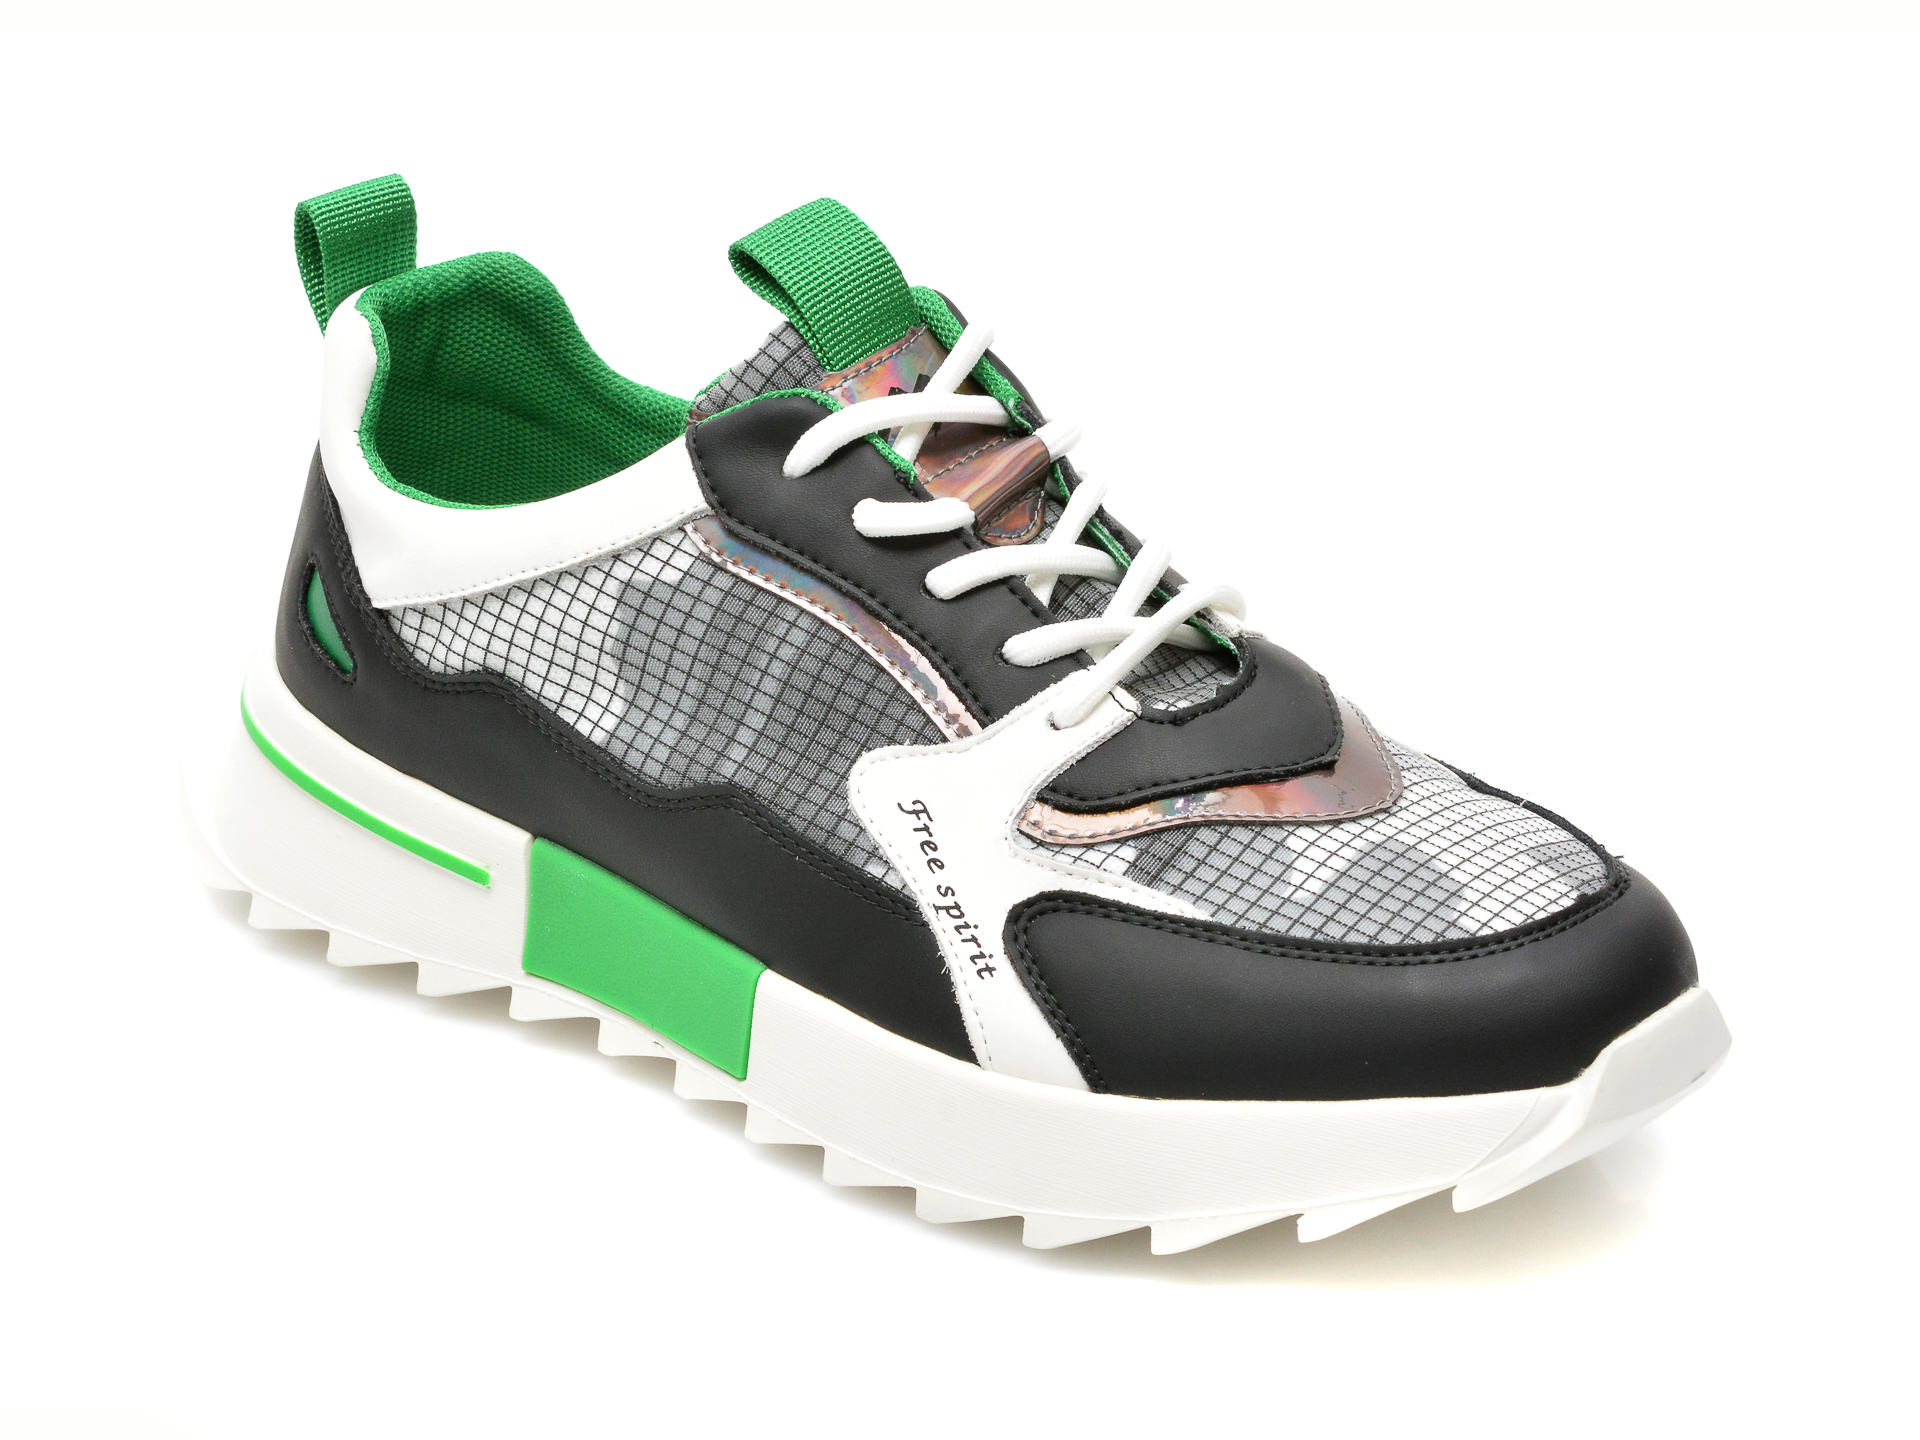 Pantofi sport GRYXX gri, 20827, din material textil si piele naturala Gryxx Gryxx